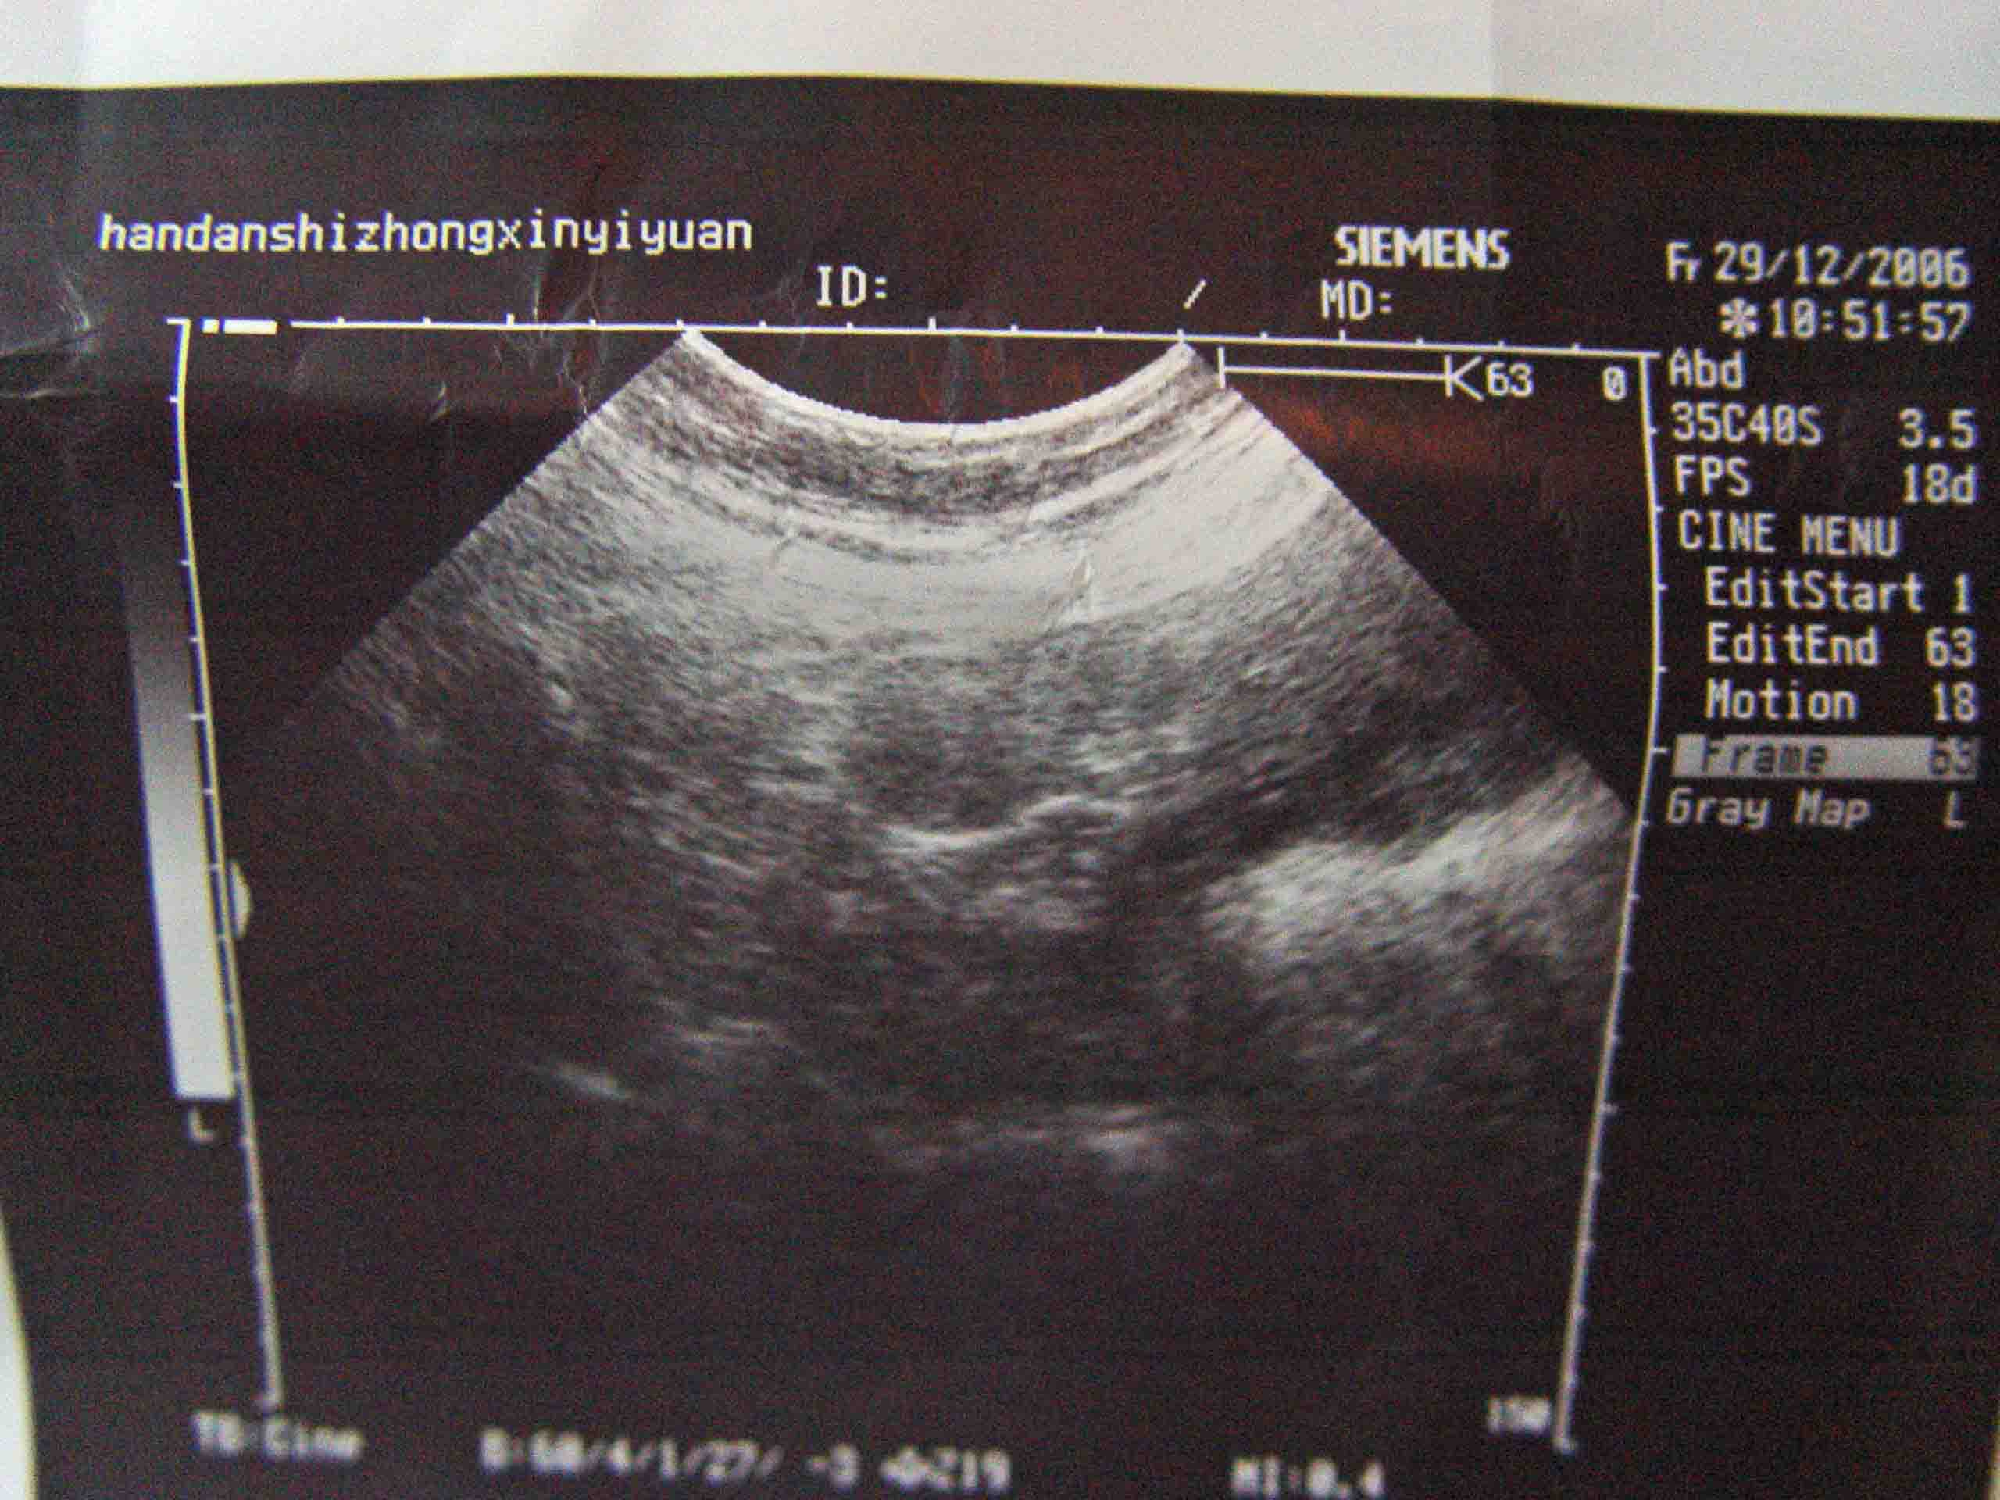 妊娠图:将孕妇体重,血压,腹围,宫底高度,胎位,胎心,水肿,蛋白尿,超声